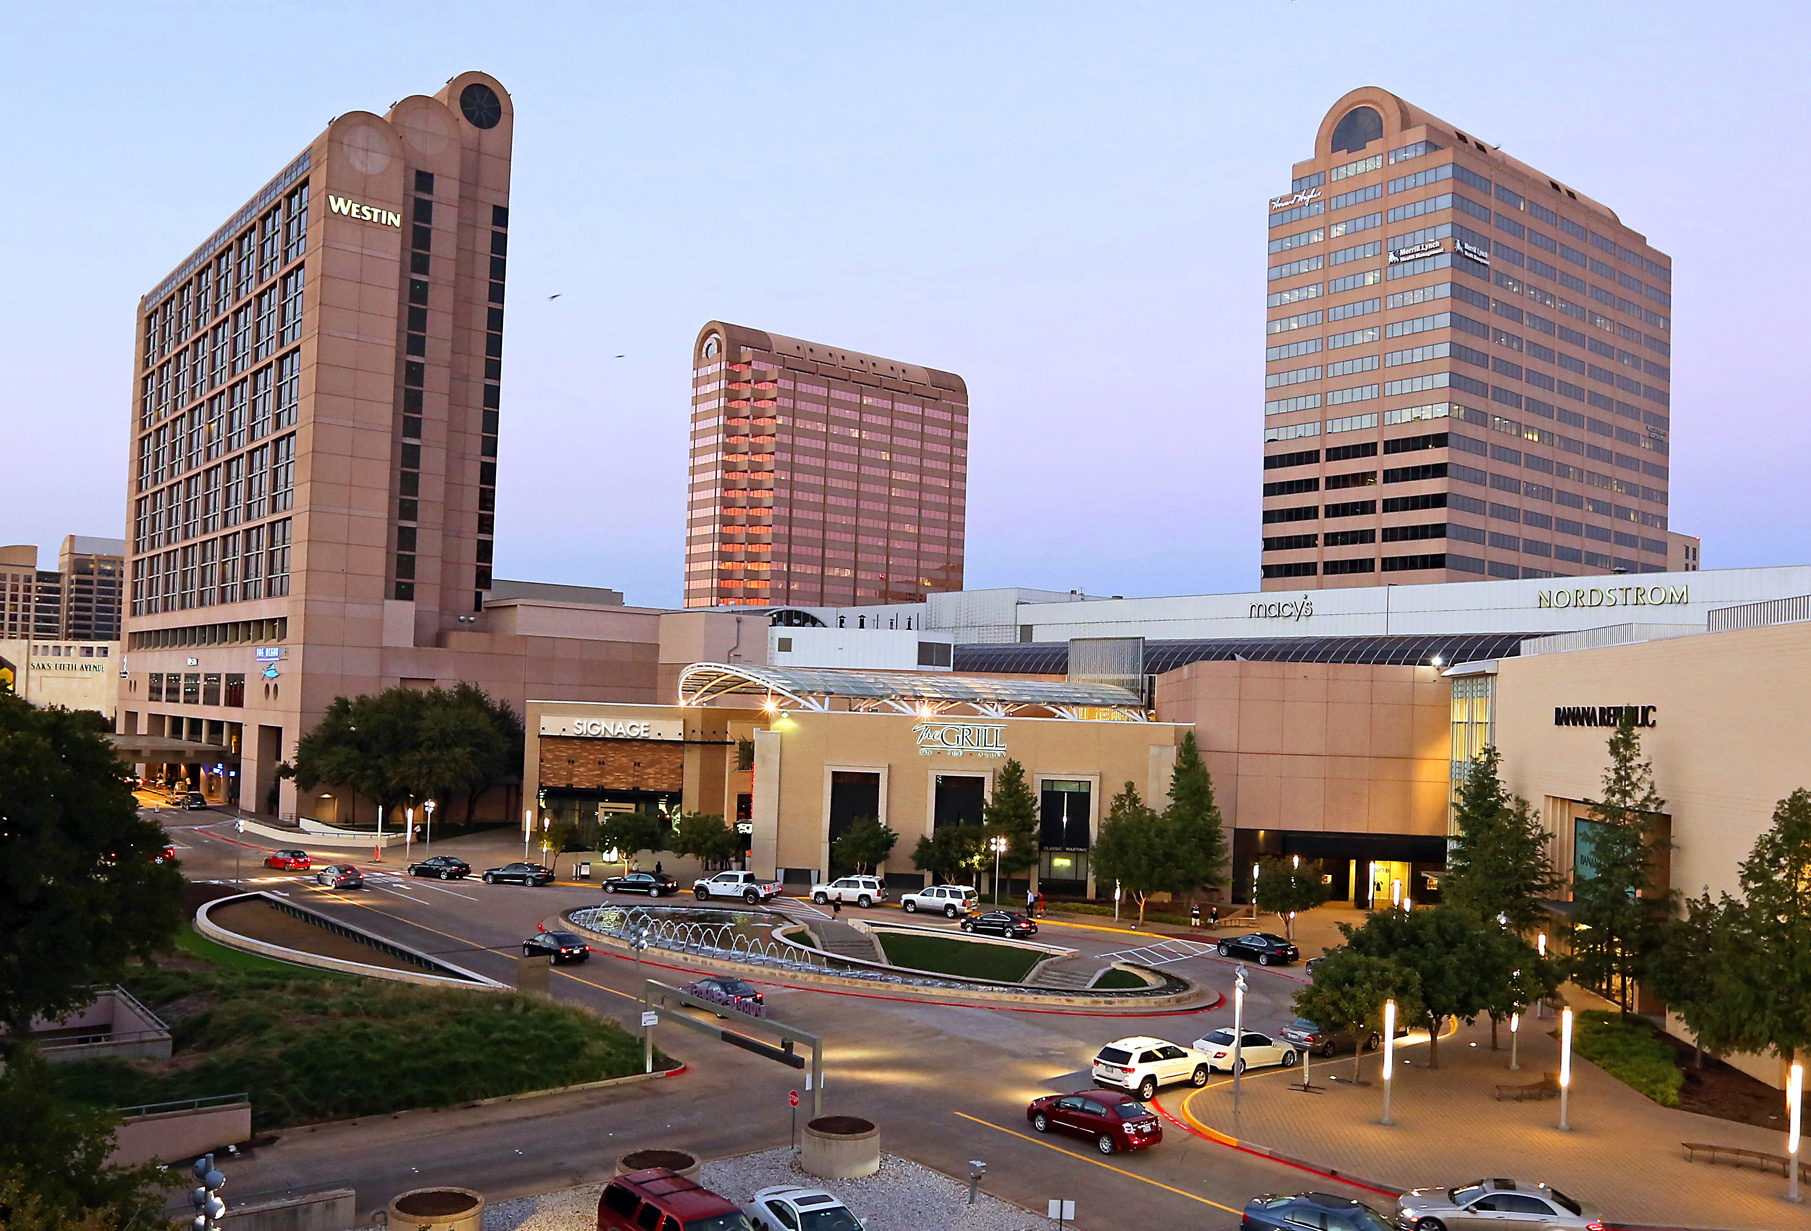 Galleria Mall Dallas Texas 